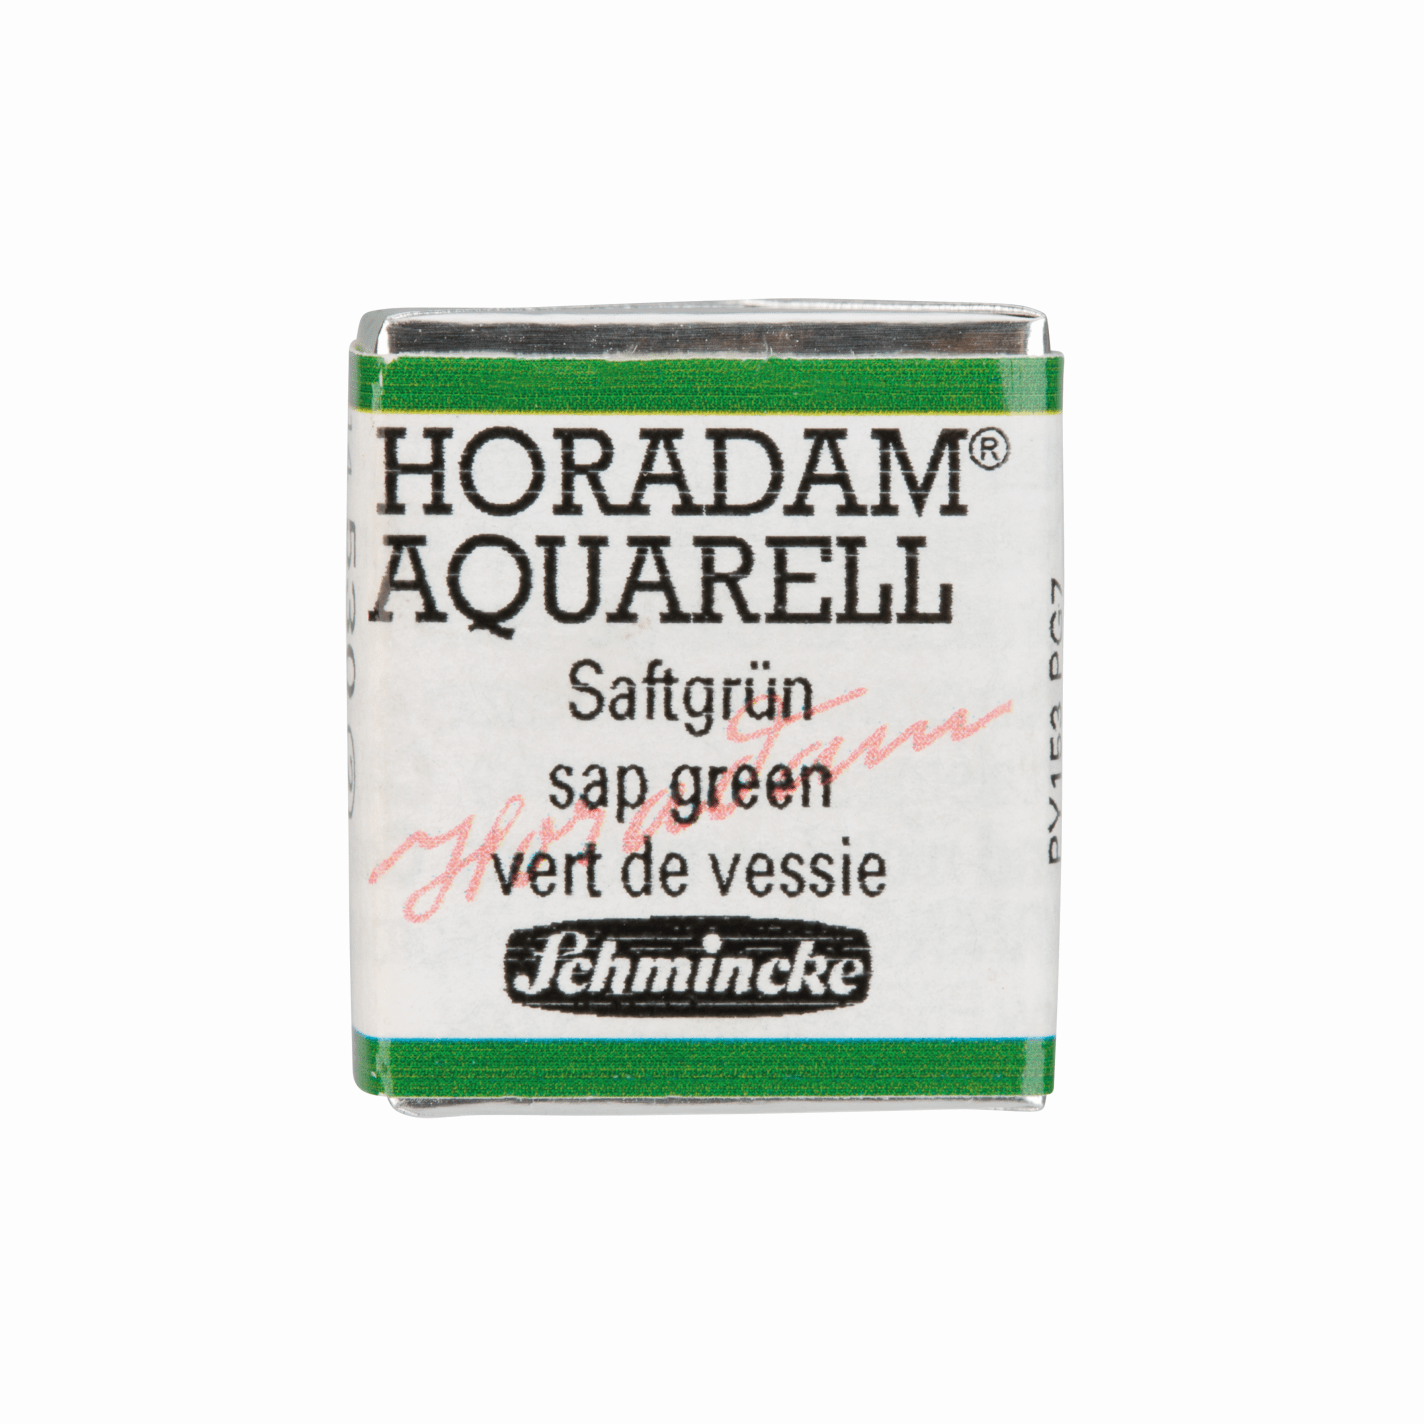 Schmincke Horadam Aquarell pans 1/2 pan Sap Green